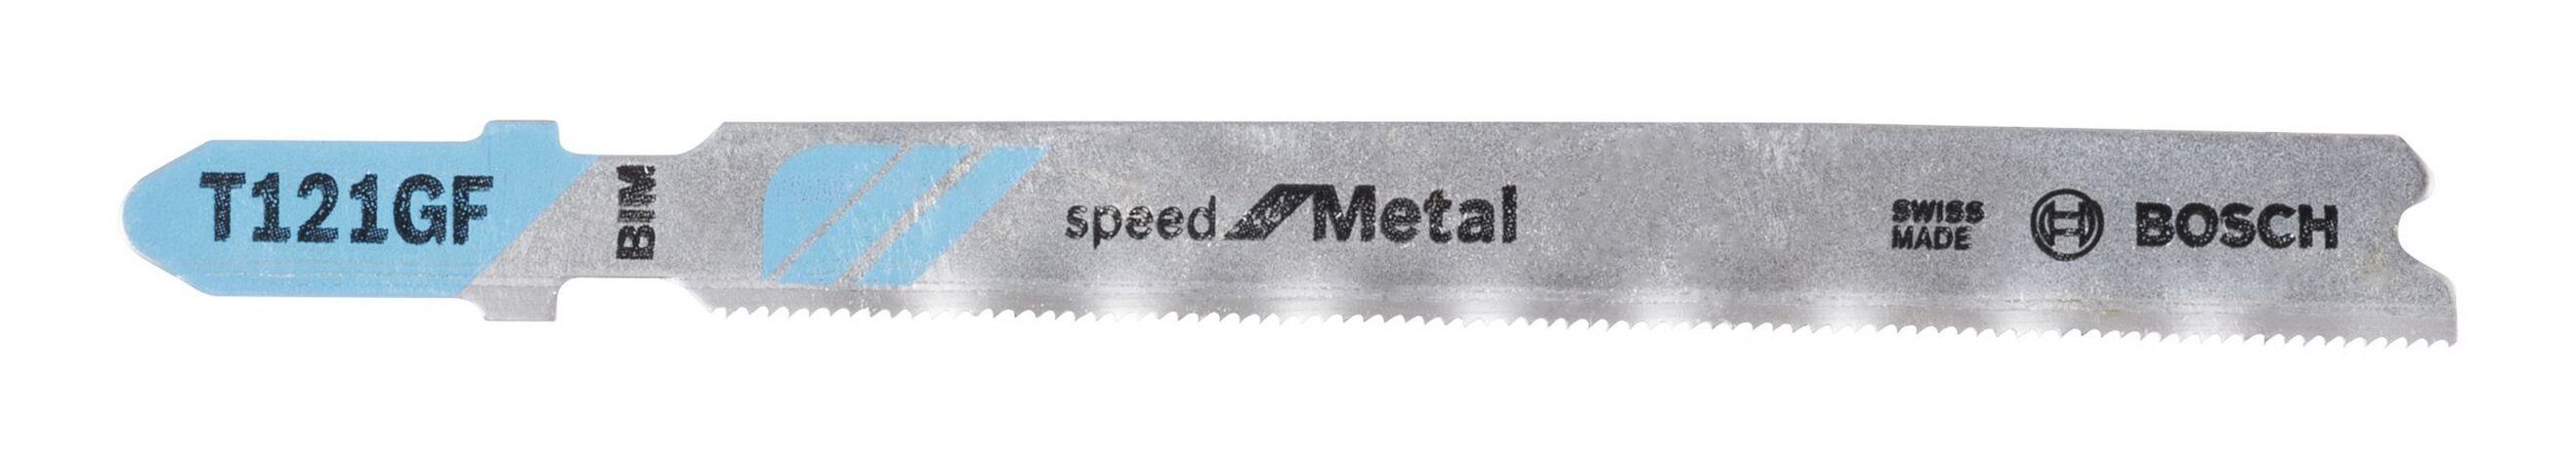 BOSCH Stichsägeblatt (3 Stück), T 121 GF Speed for Metal - 3er-Pack